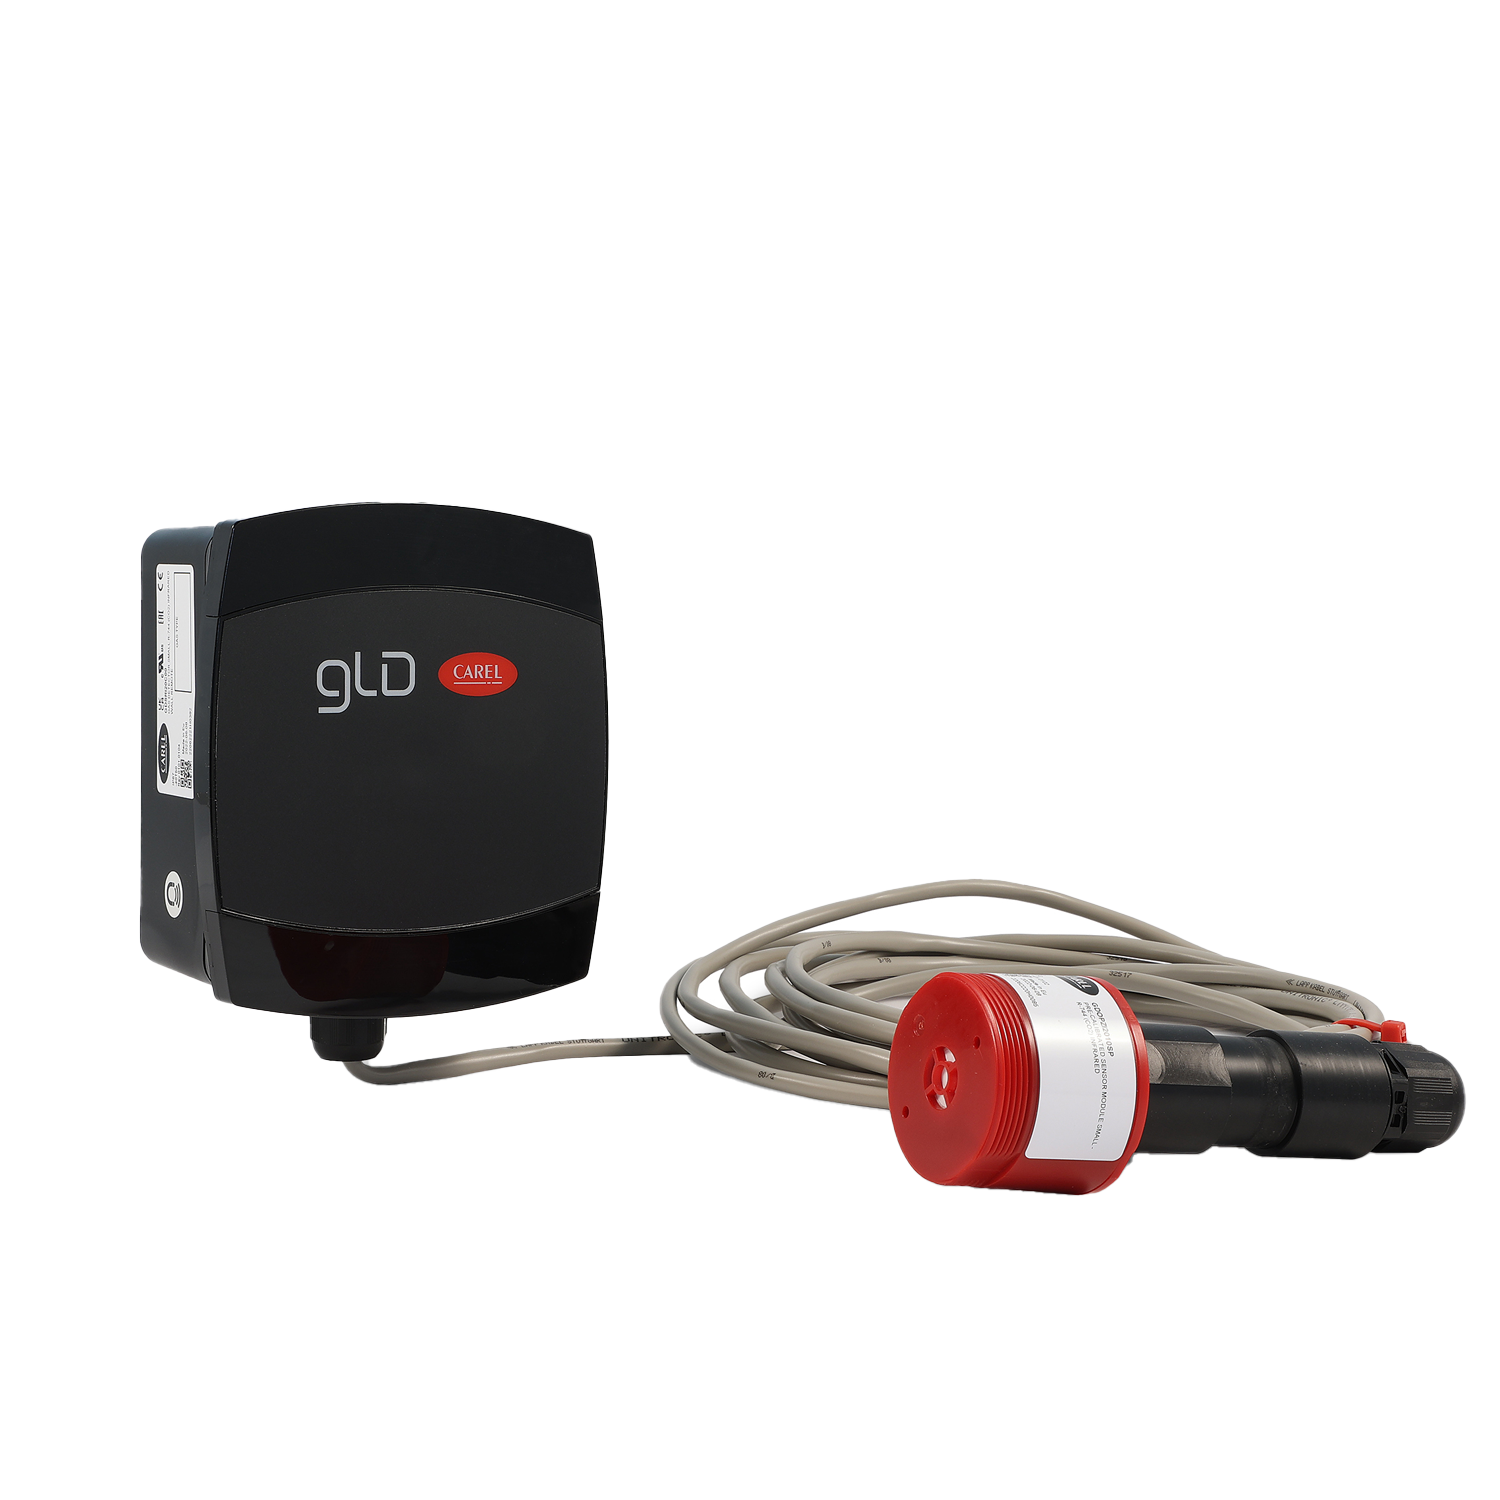 GLD - Gas Leckage Sensoren Small Remote